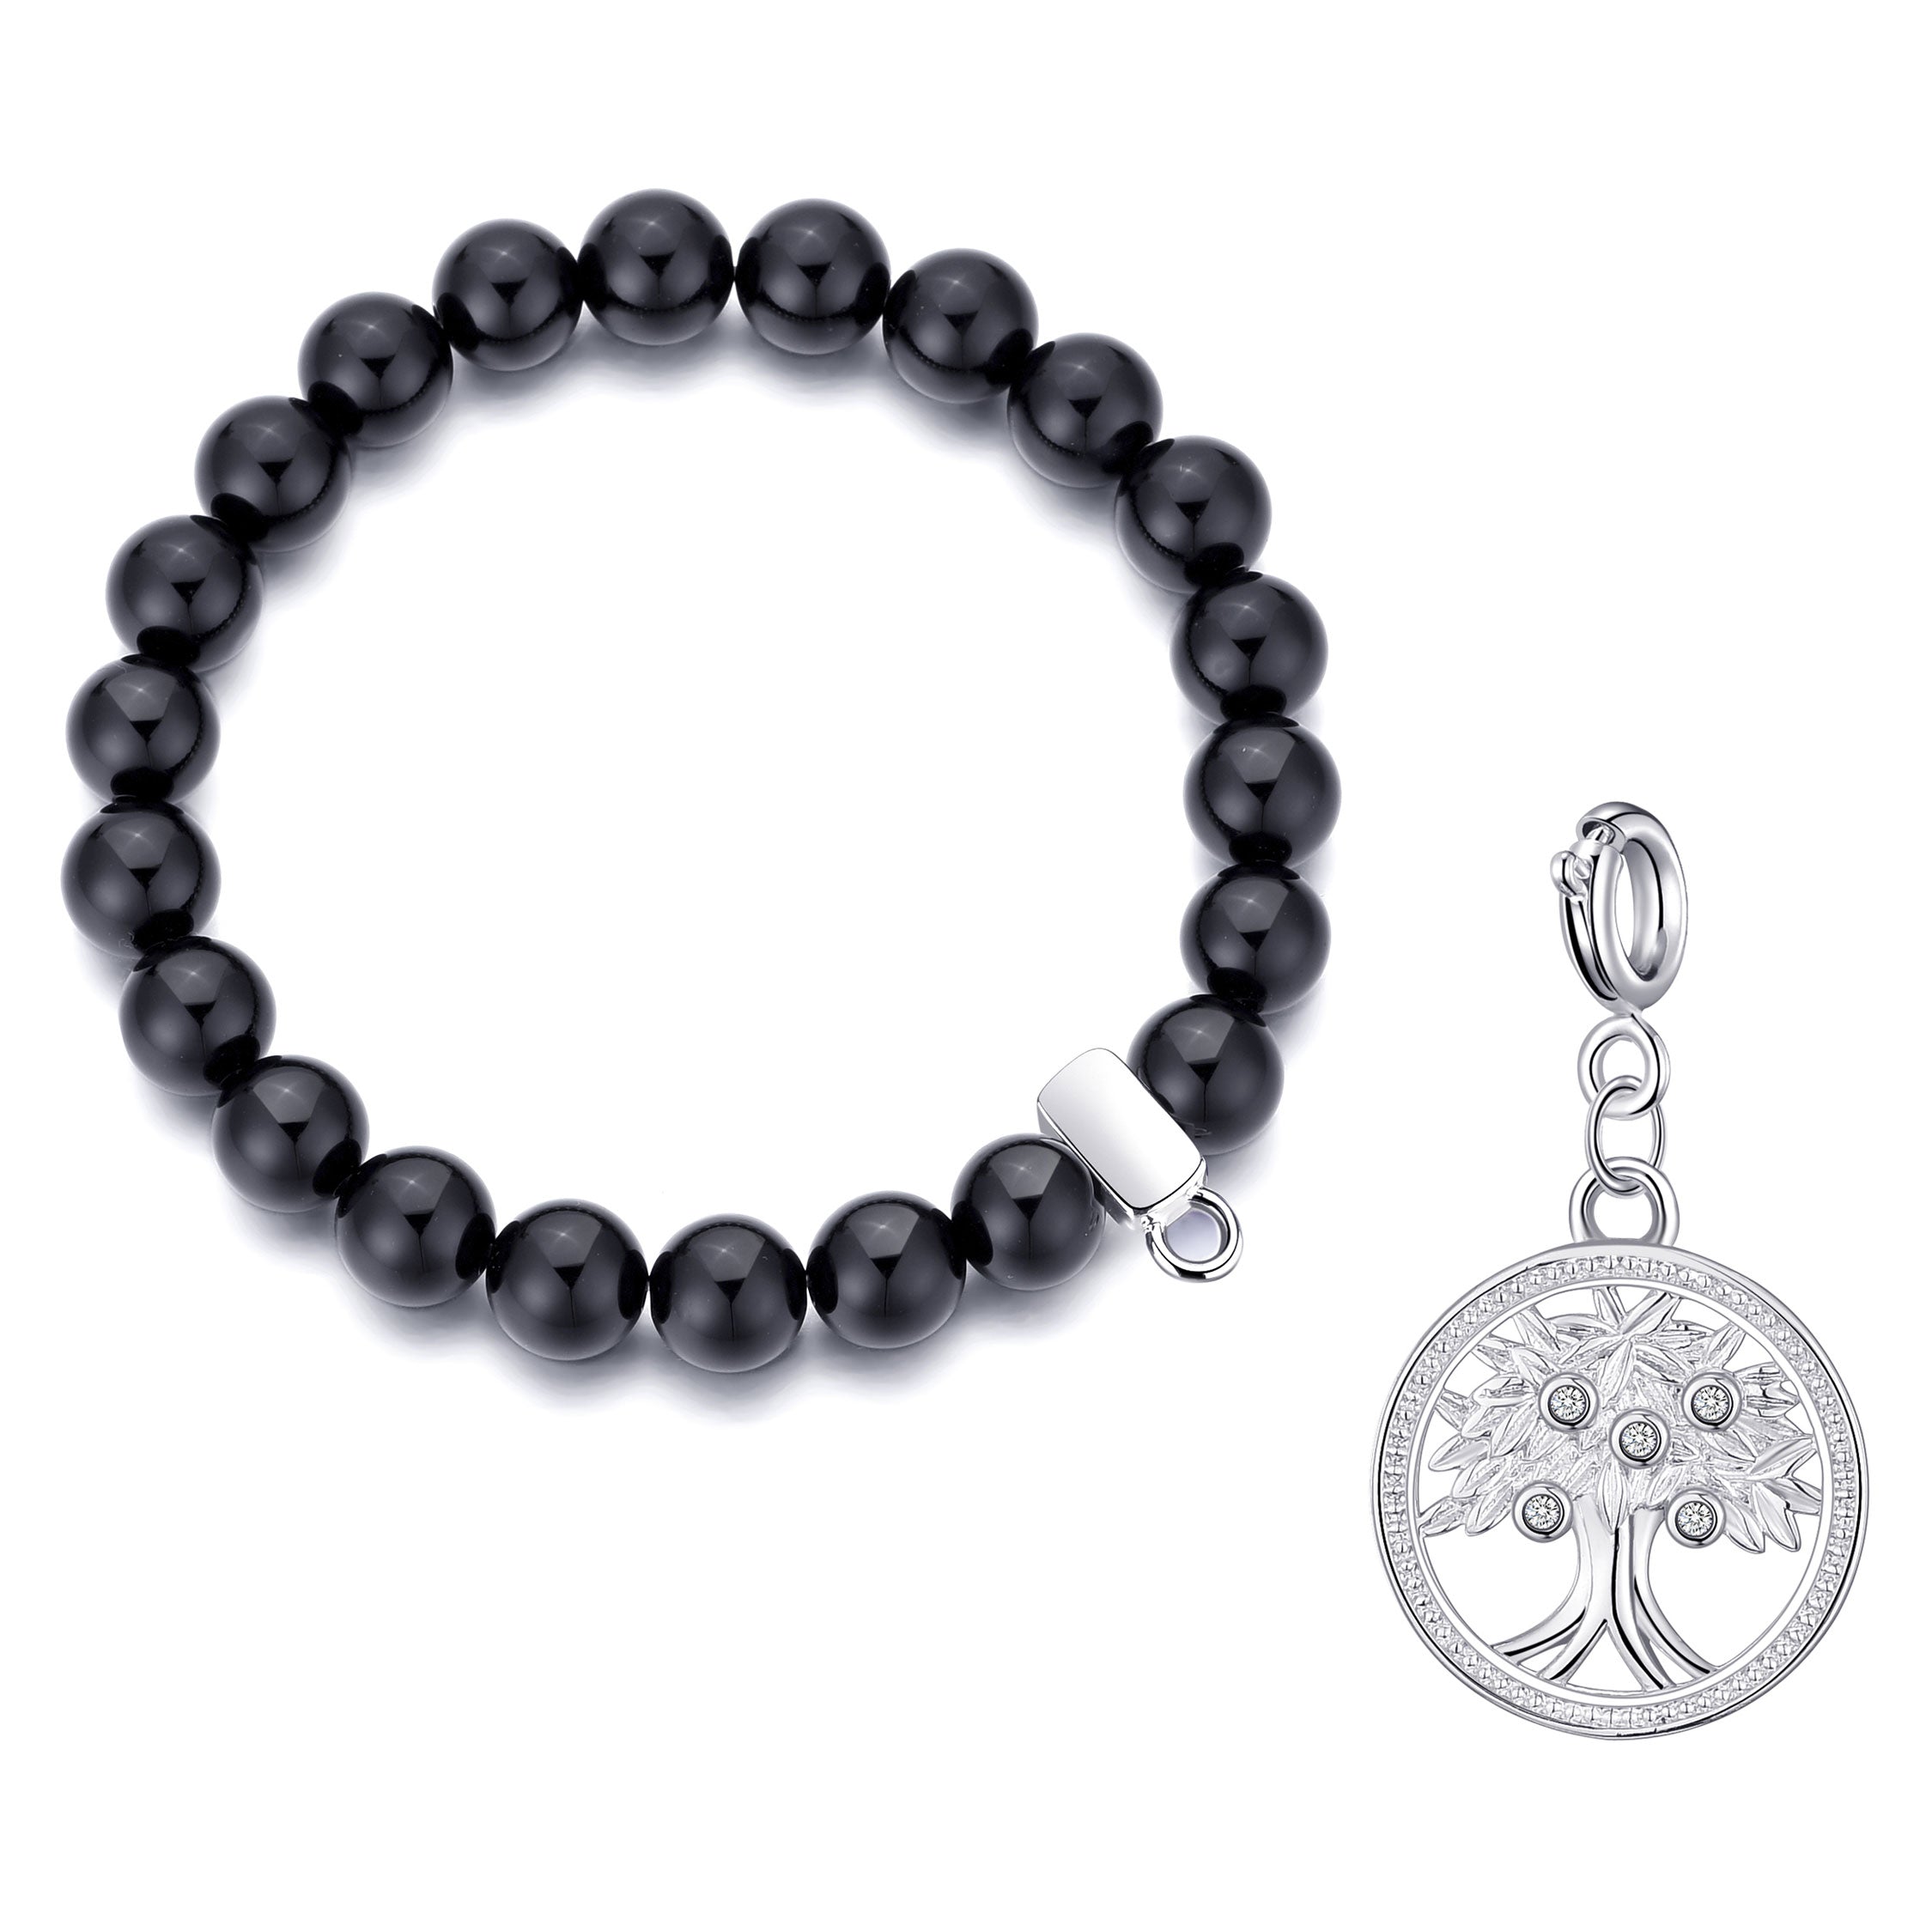 Black Onyx Gemstone Stretch Bracelet with Charm Created with Zircondia® Crystals